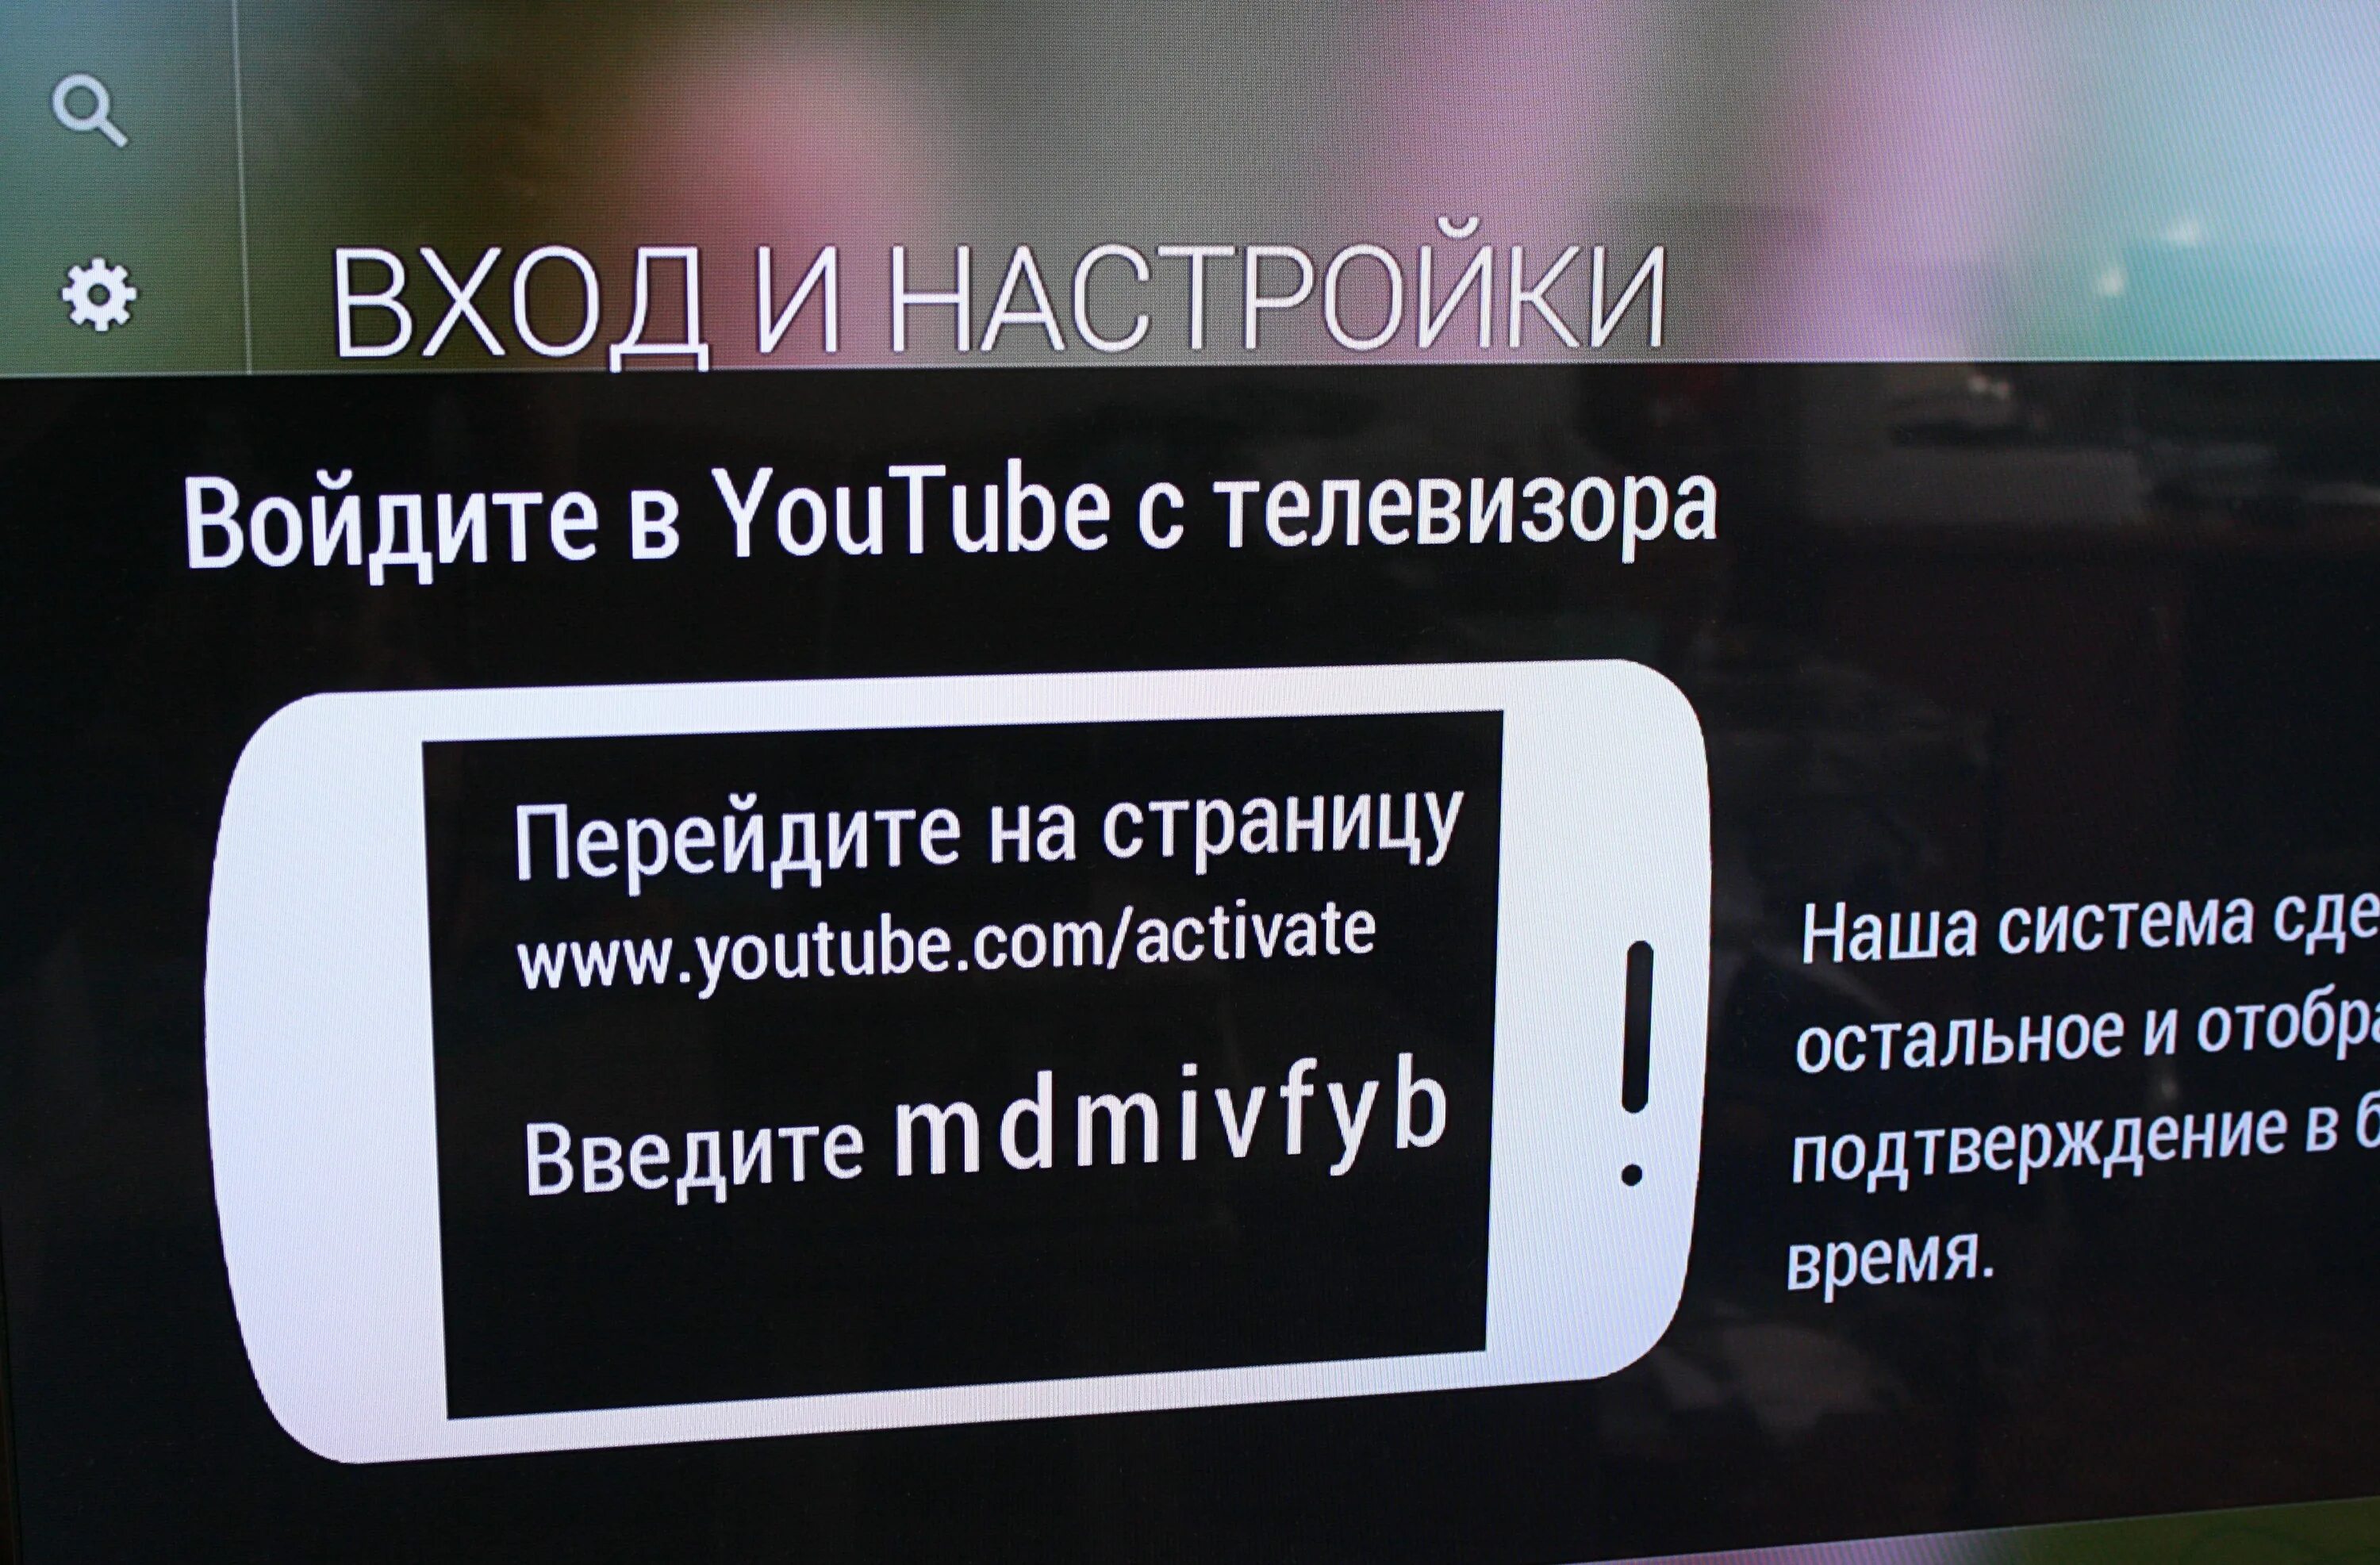 Ютуб телевизор код. Youtube.com /activate войти. Youtube com activate войти в аккаунт кодом телевизора. Youtube com activate вход.